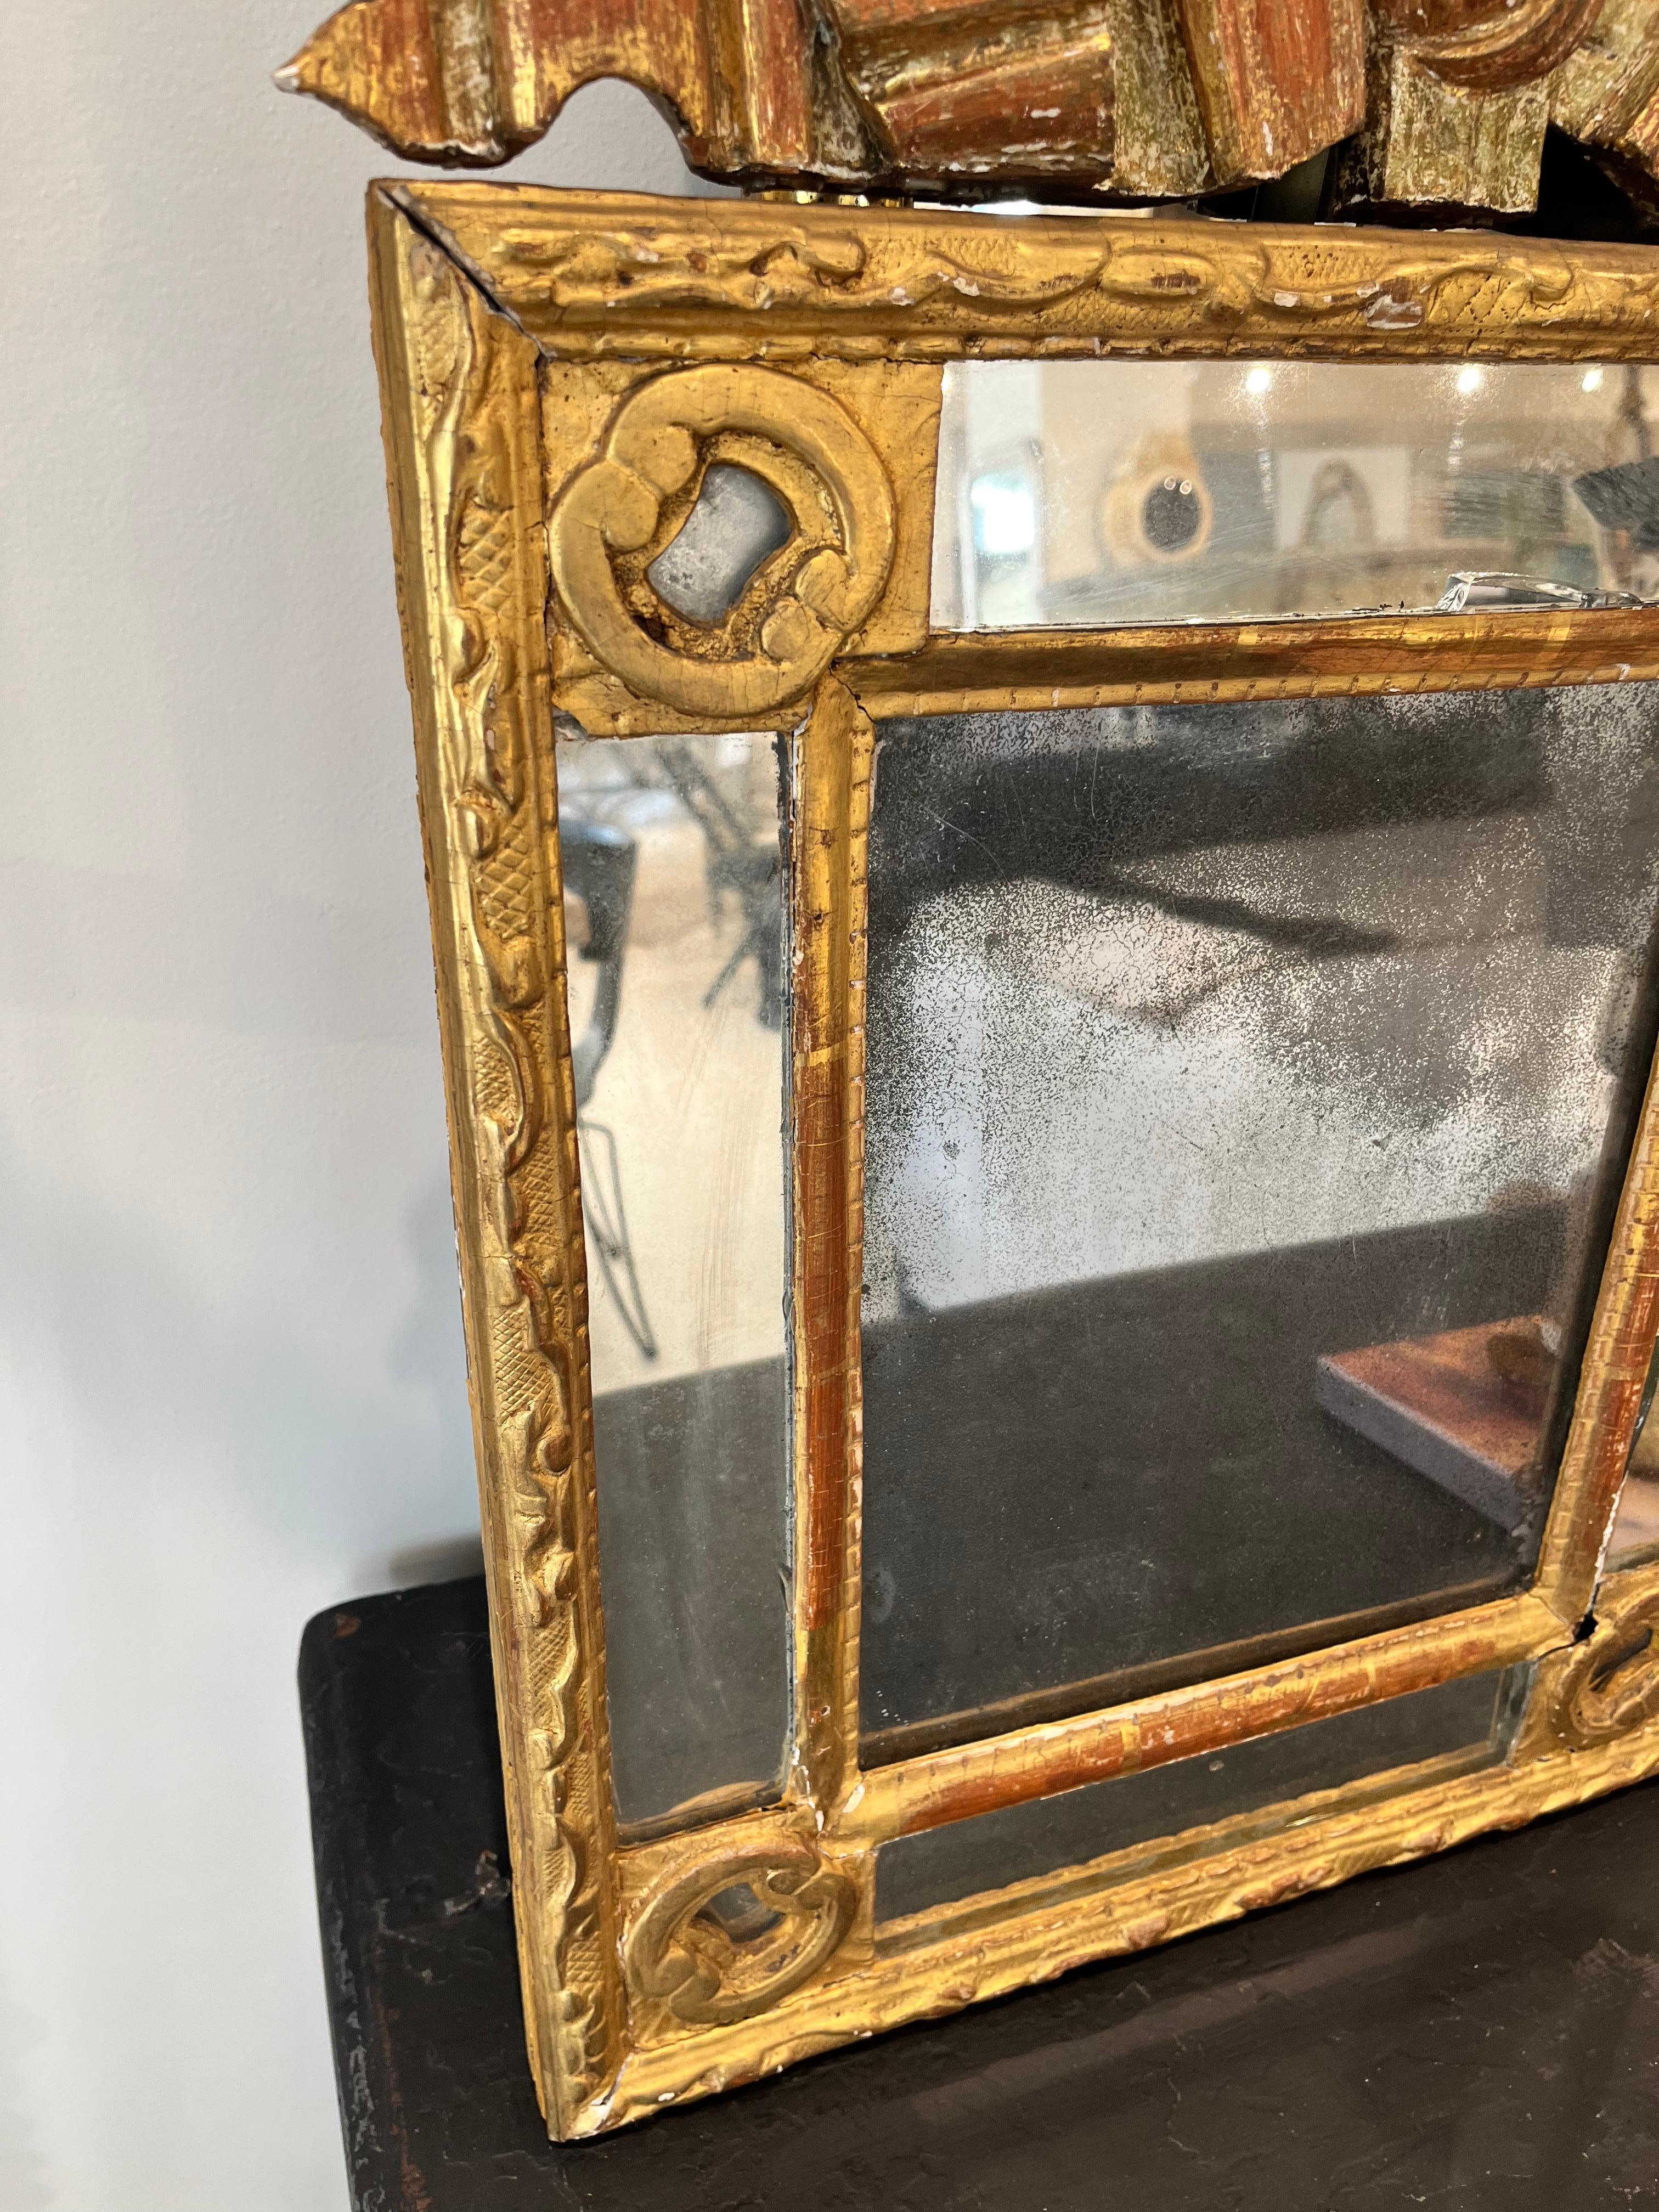 Miroir en bois doré de style néoclassique européen du XVIIIe siècle, avec des motifs d'angle décoratifs, bordé de 4 glissoires séparées. De la succession de Richard I. Johnson de Chestnut Hill, Massachusetts. La dorure est écaillée et 3 feuillets en